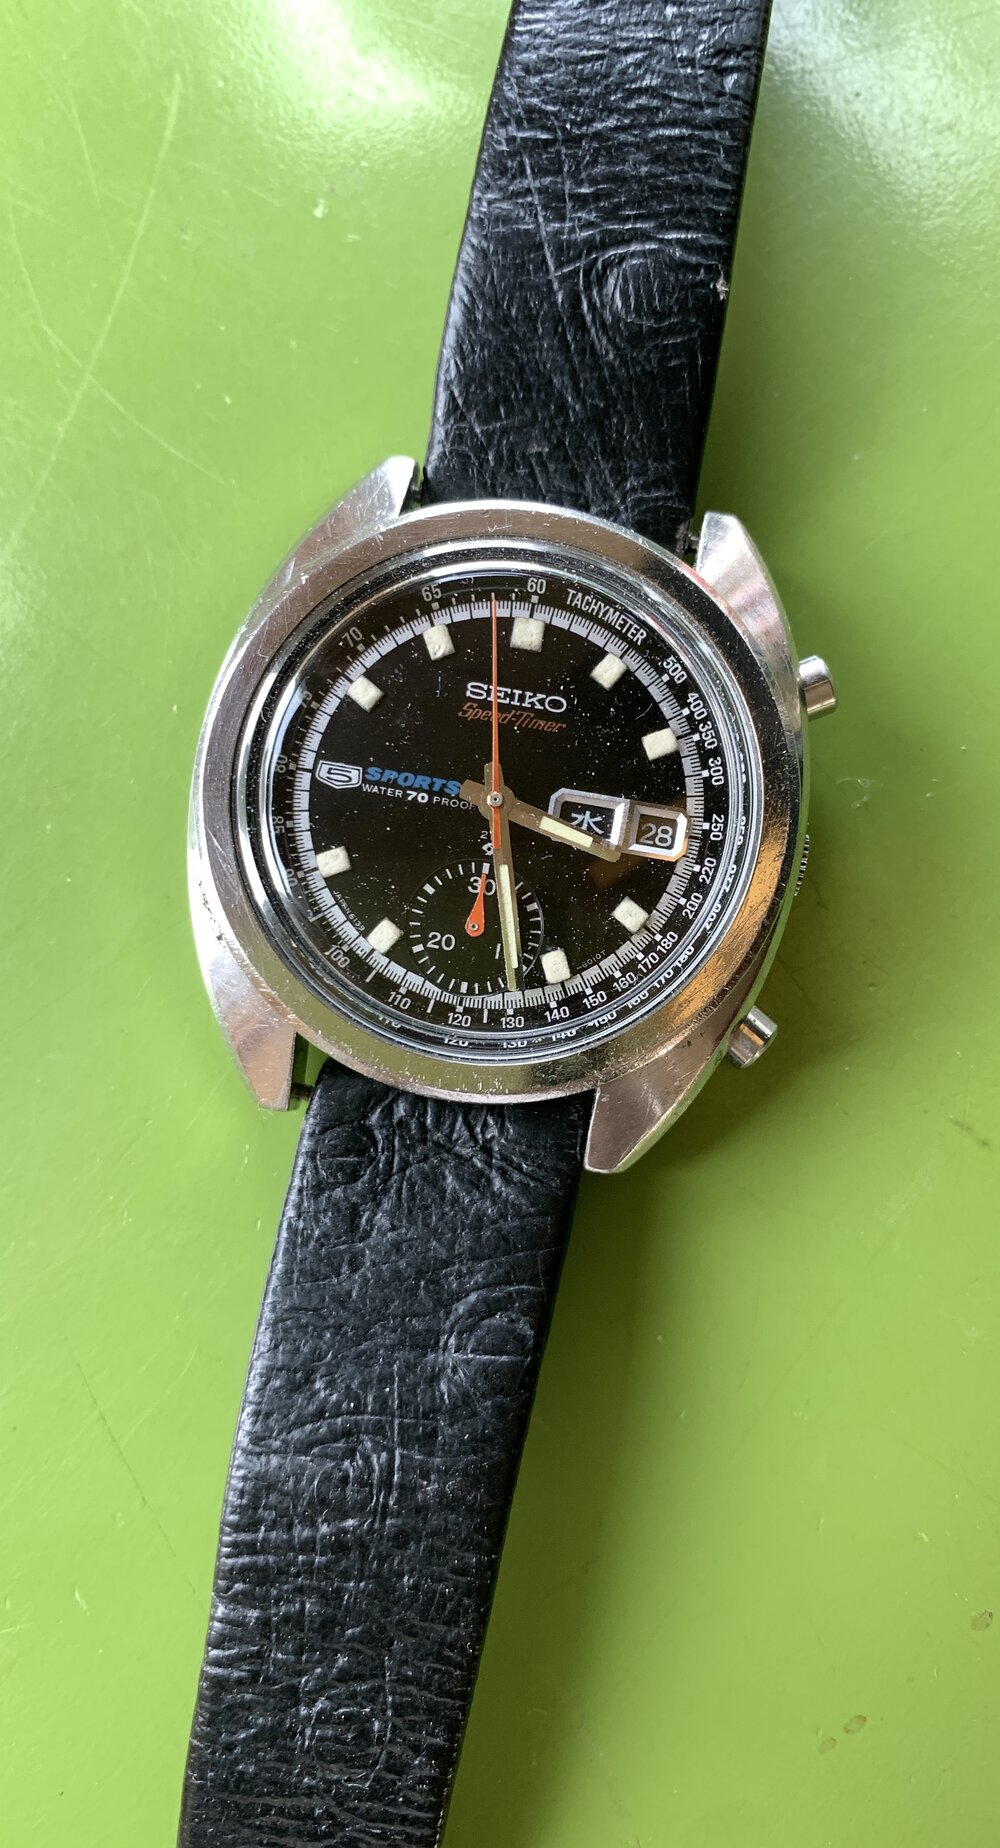 December 1970 6139-6011 Bruce Lee Speedtimer — Klein Vintage Watch